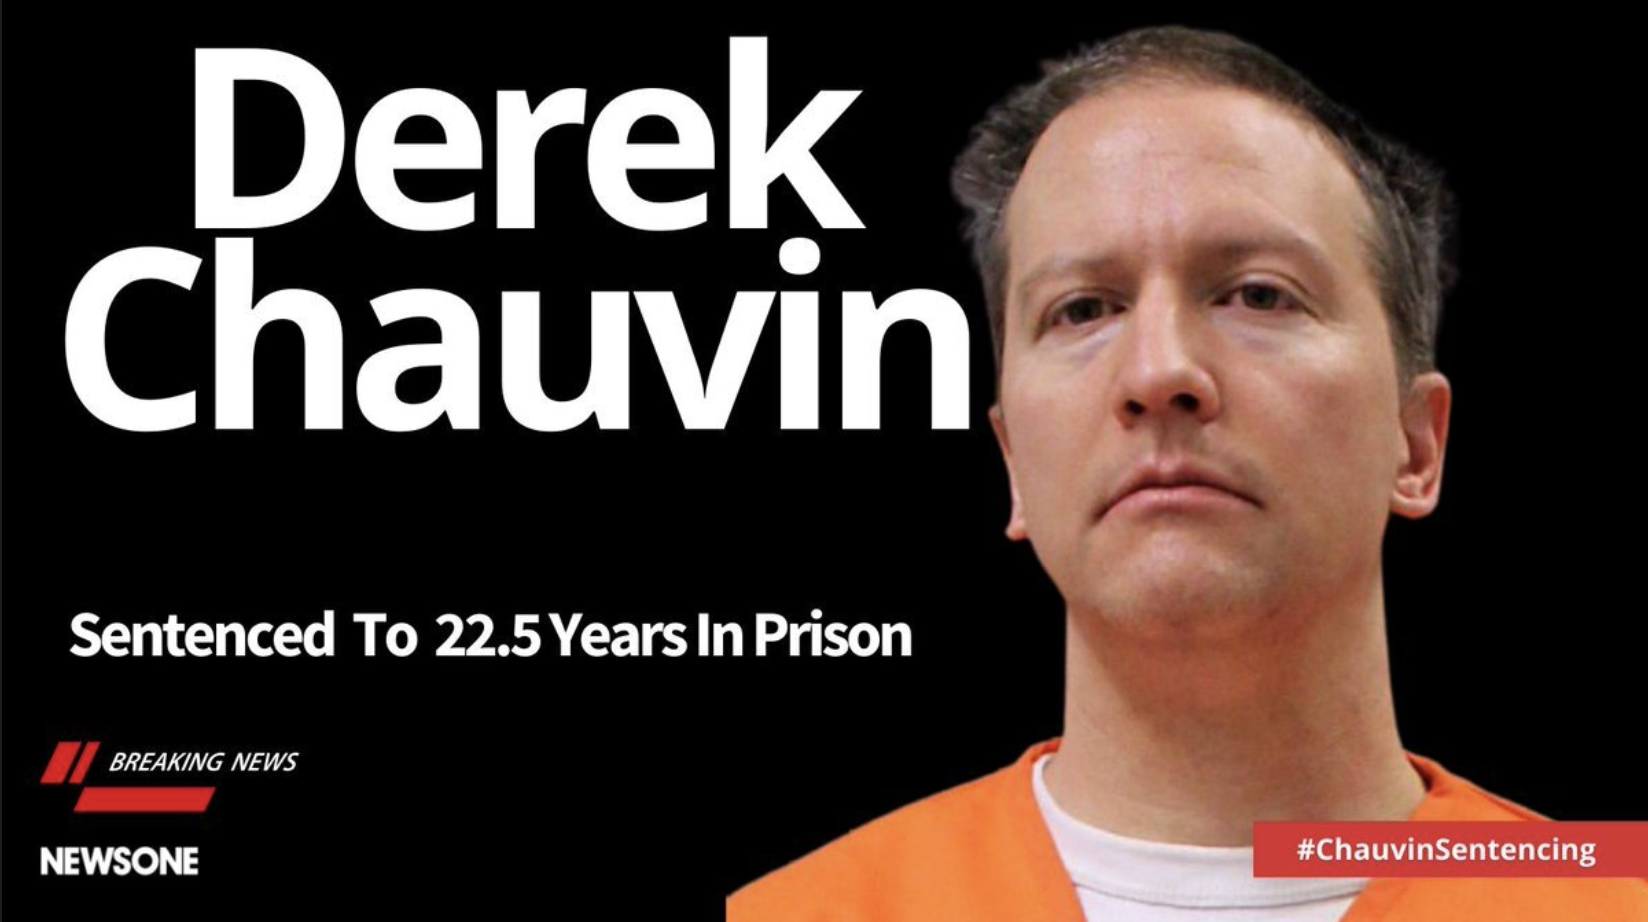 Derek Chauvin sentenced to 22.5 years